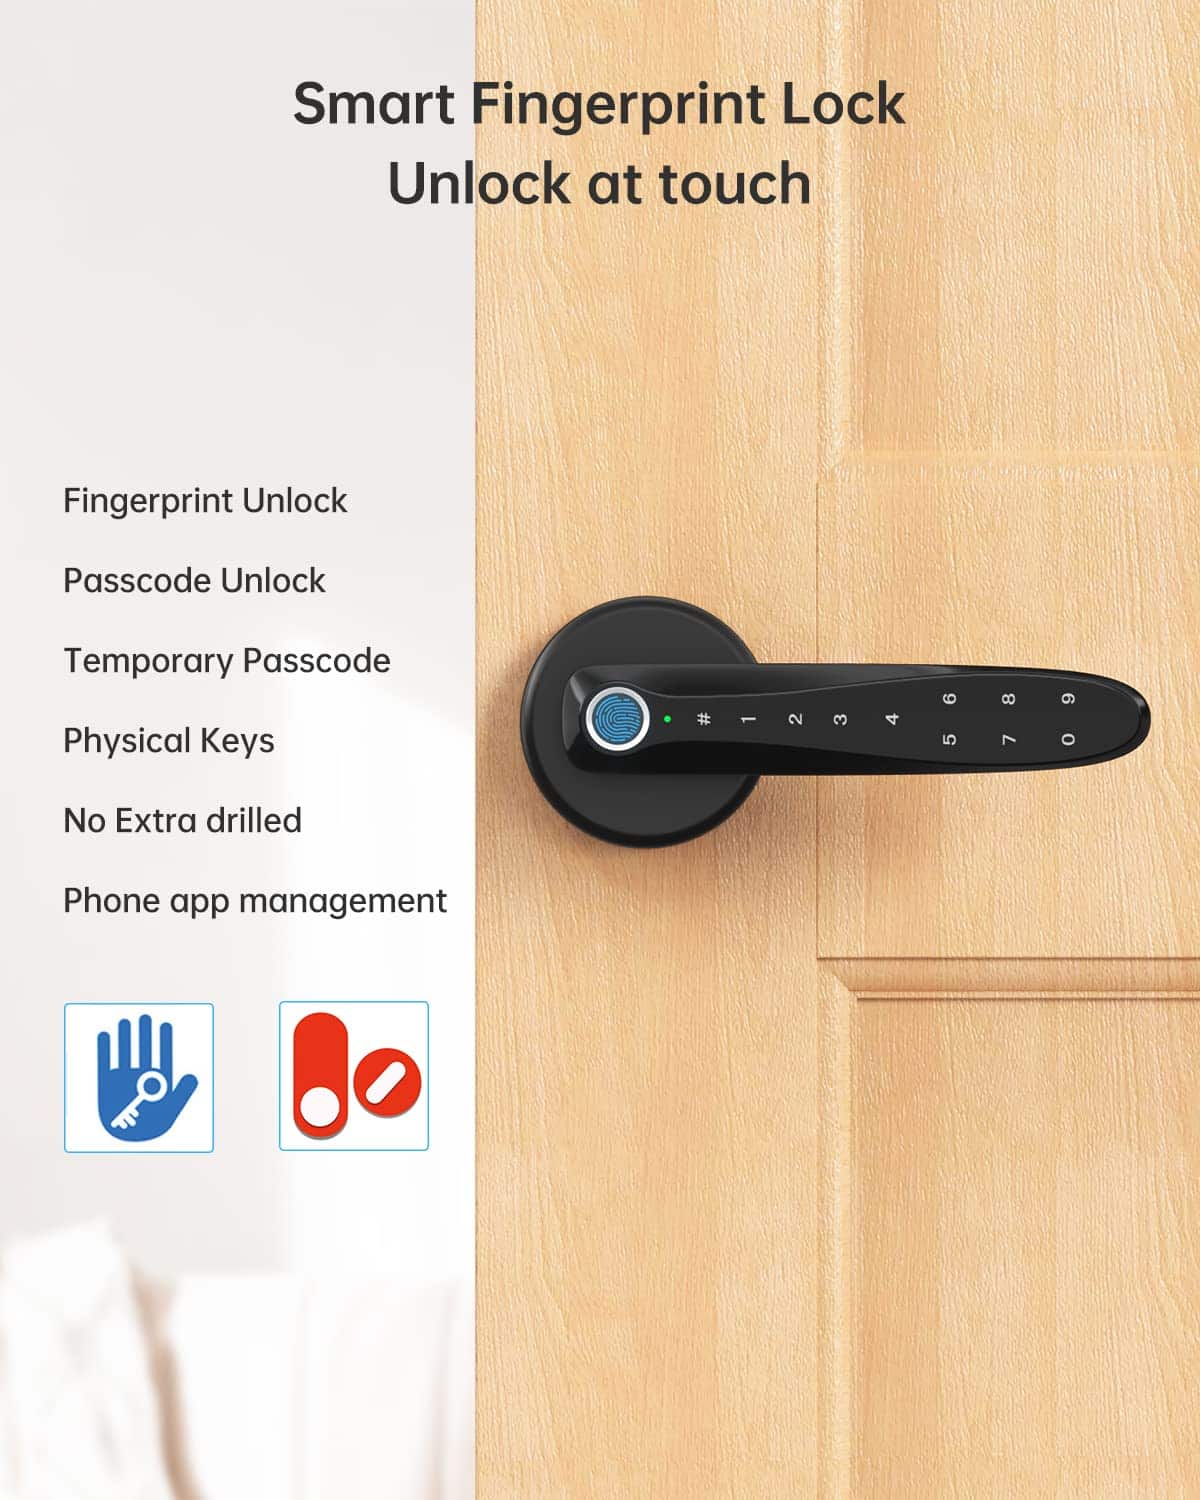 Smart fingerprint lock